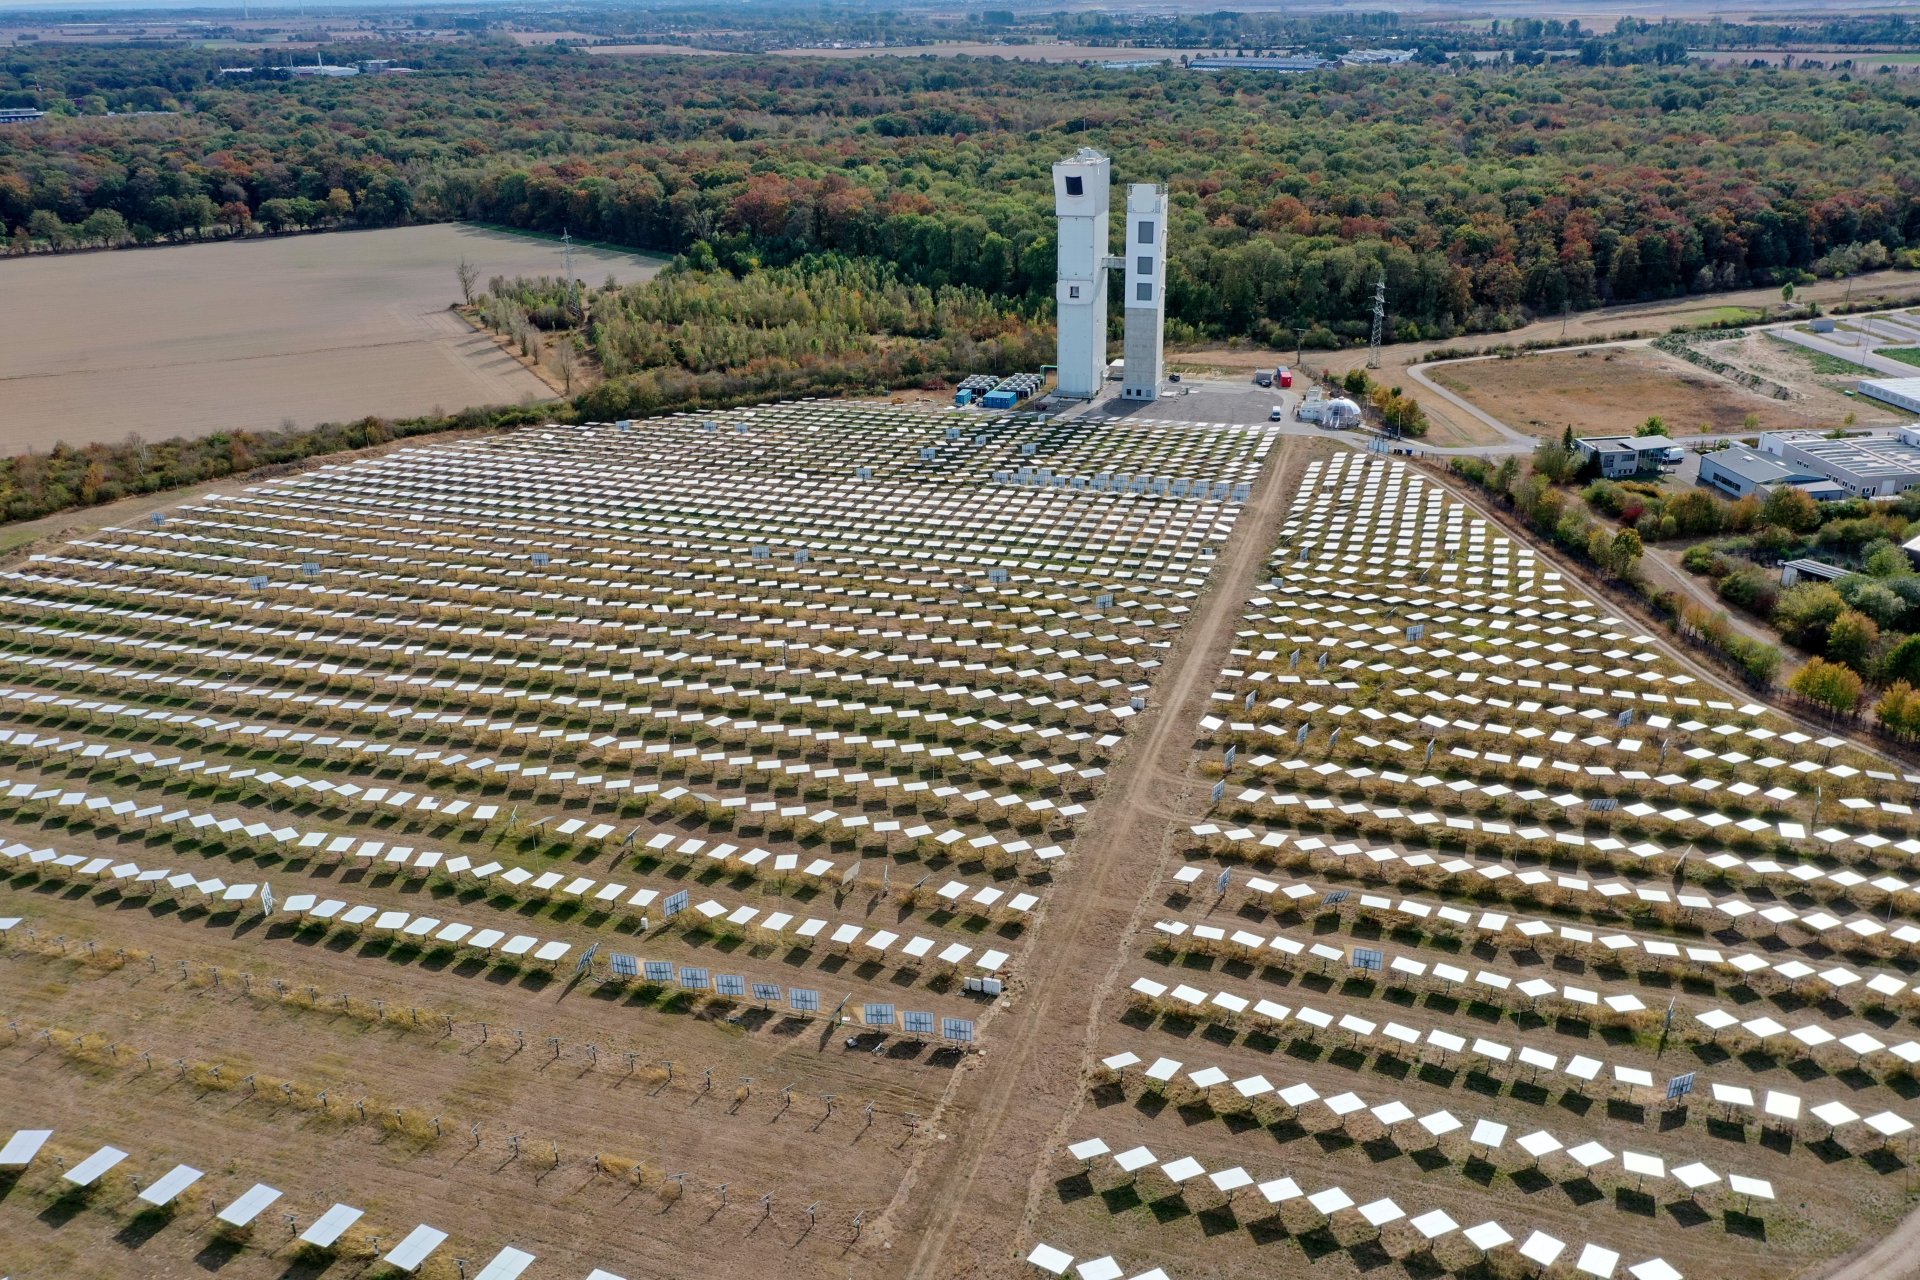 德國於利希航空中心(DLR)的太陽能測試設施